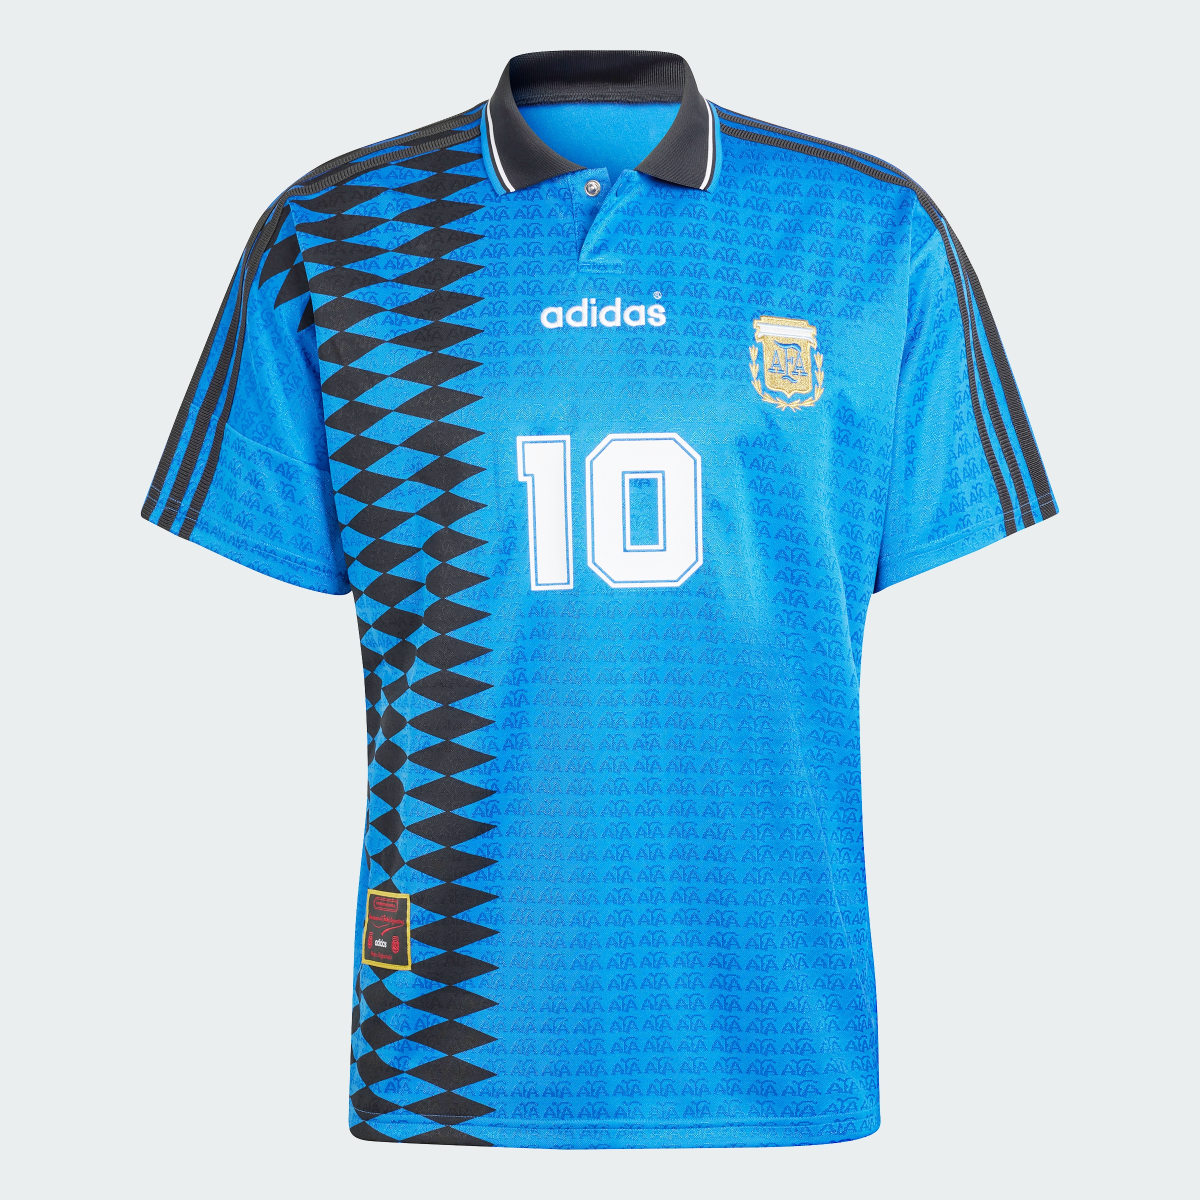 Adidas Koszulka Argentina 1994 Away. 5